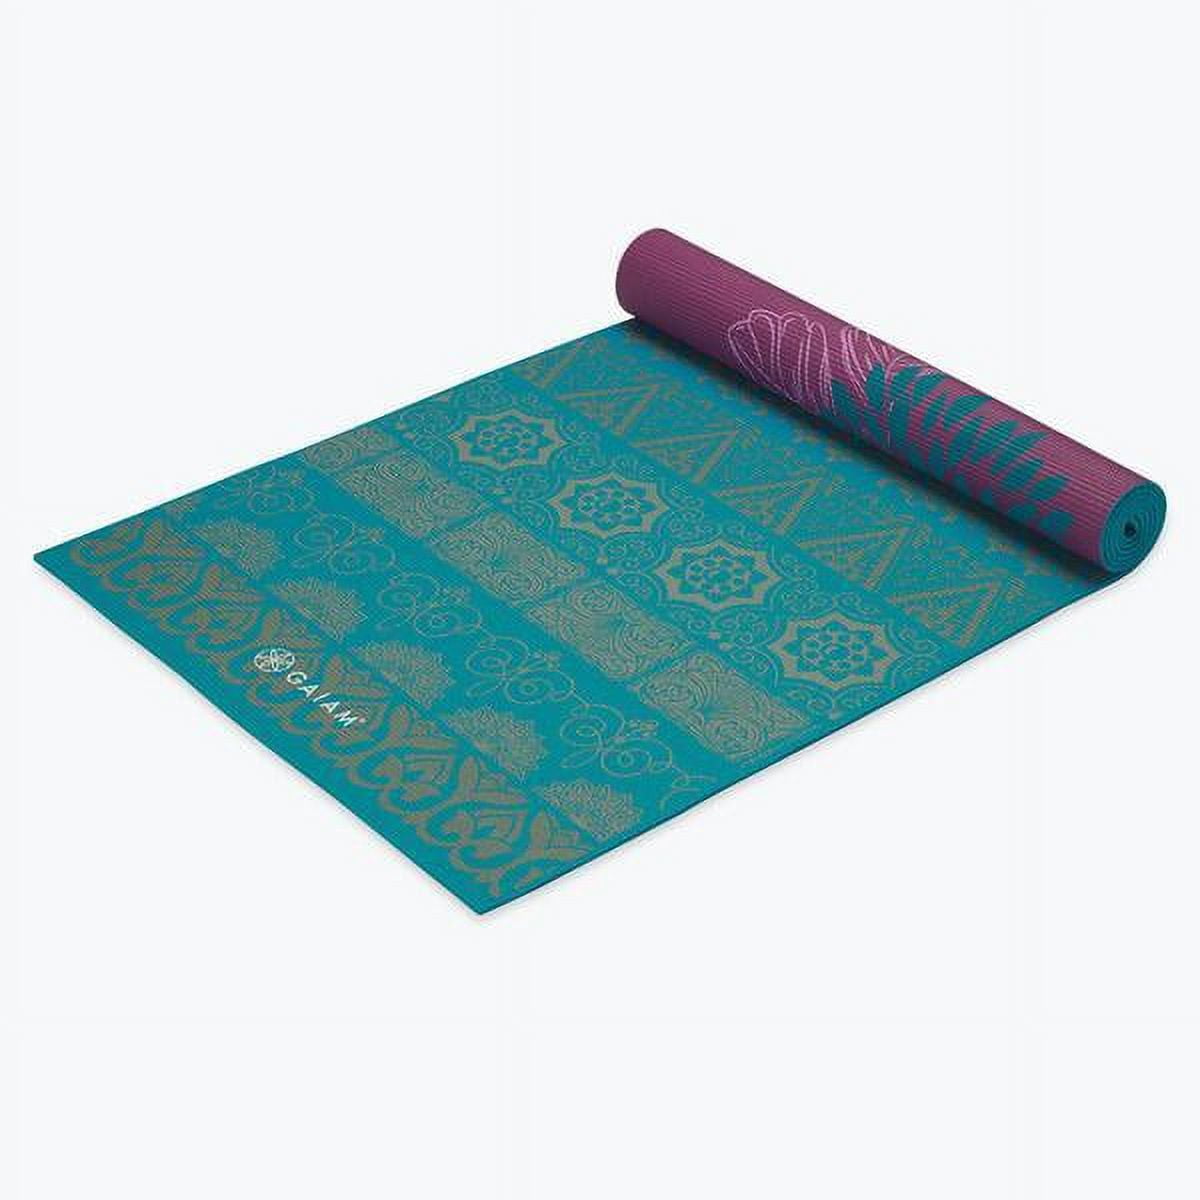 Gaiam Premium Reversible Yoga Mat, Plum Etching, 6mm 